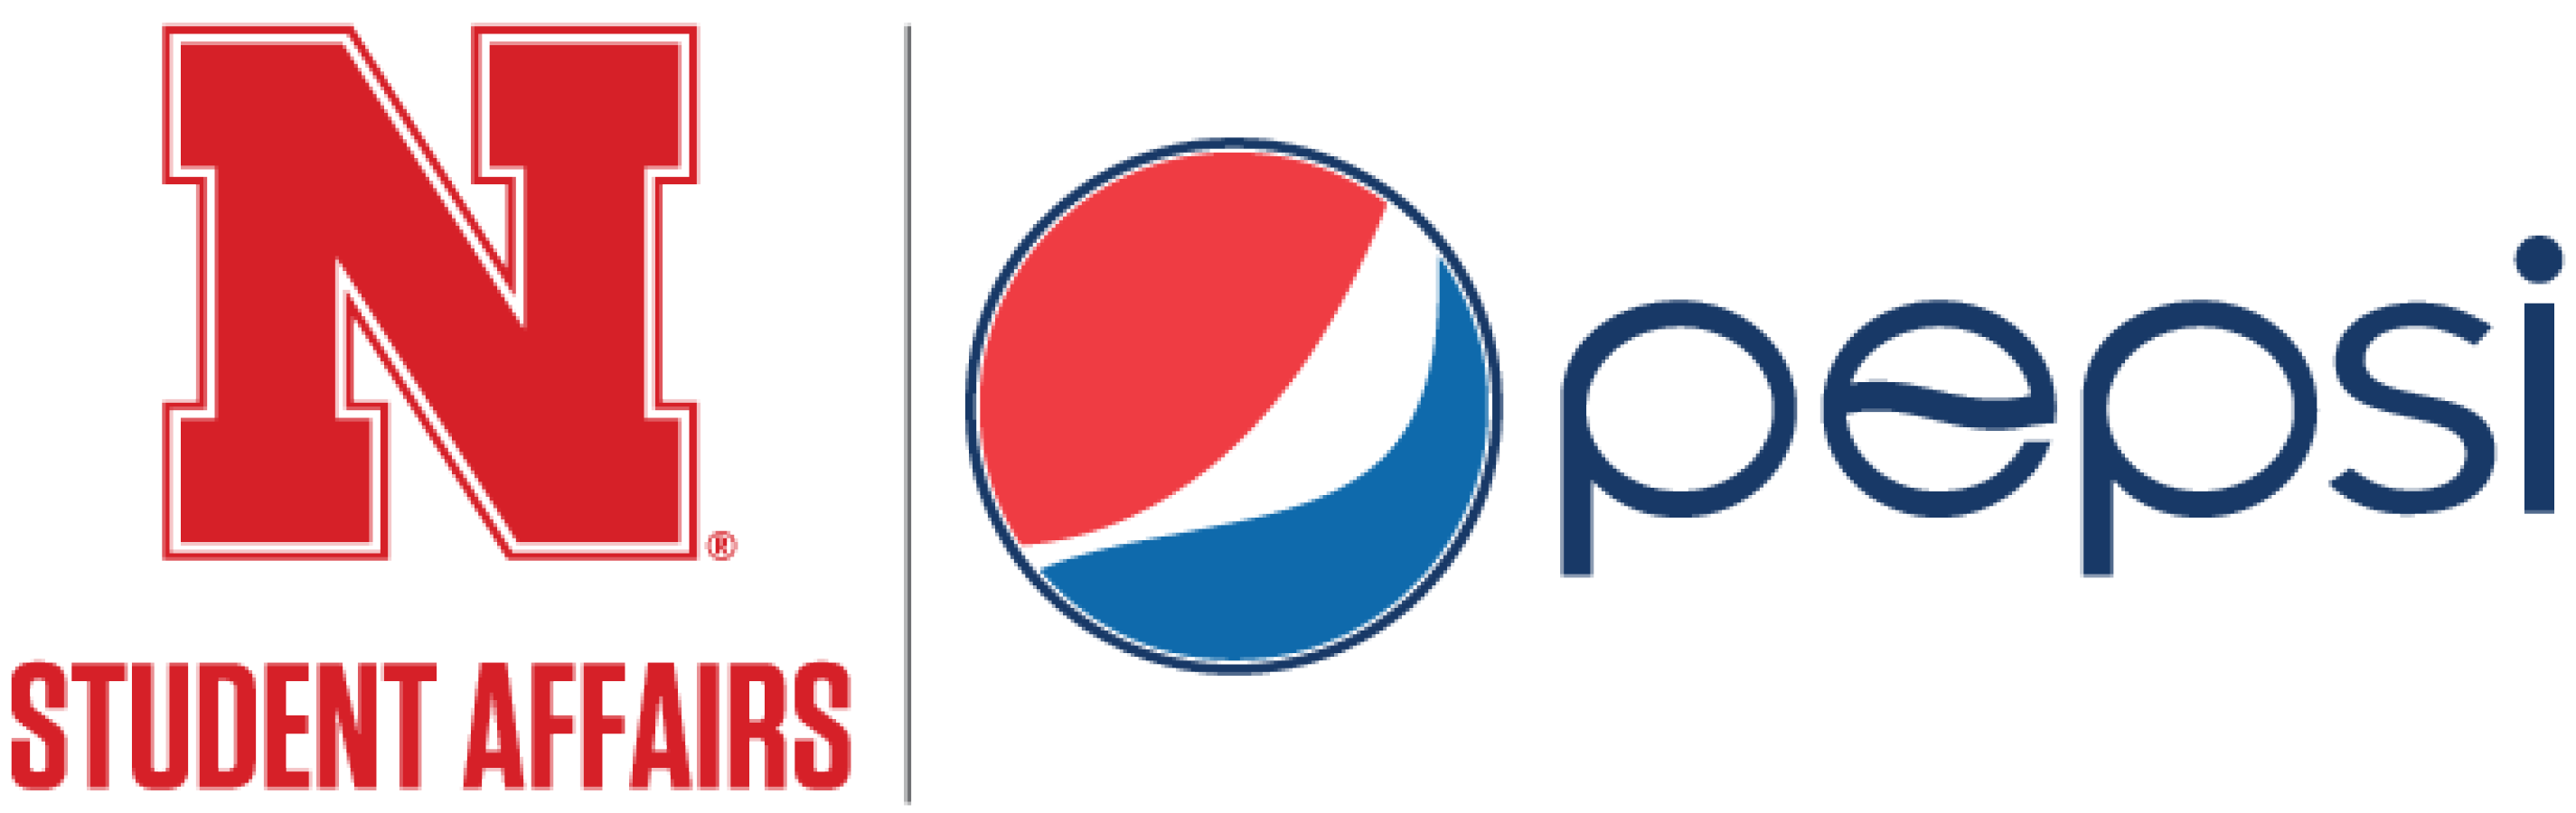 Student Affairs | Pepsi